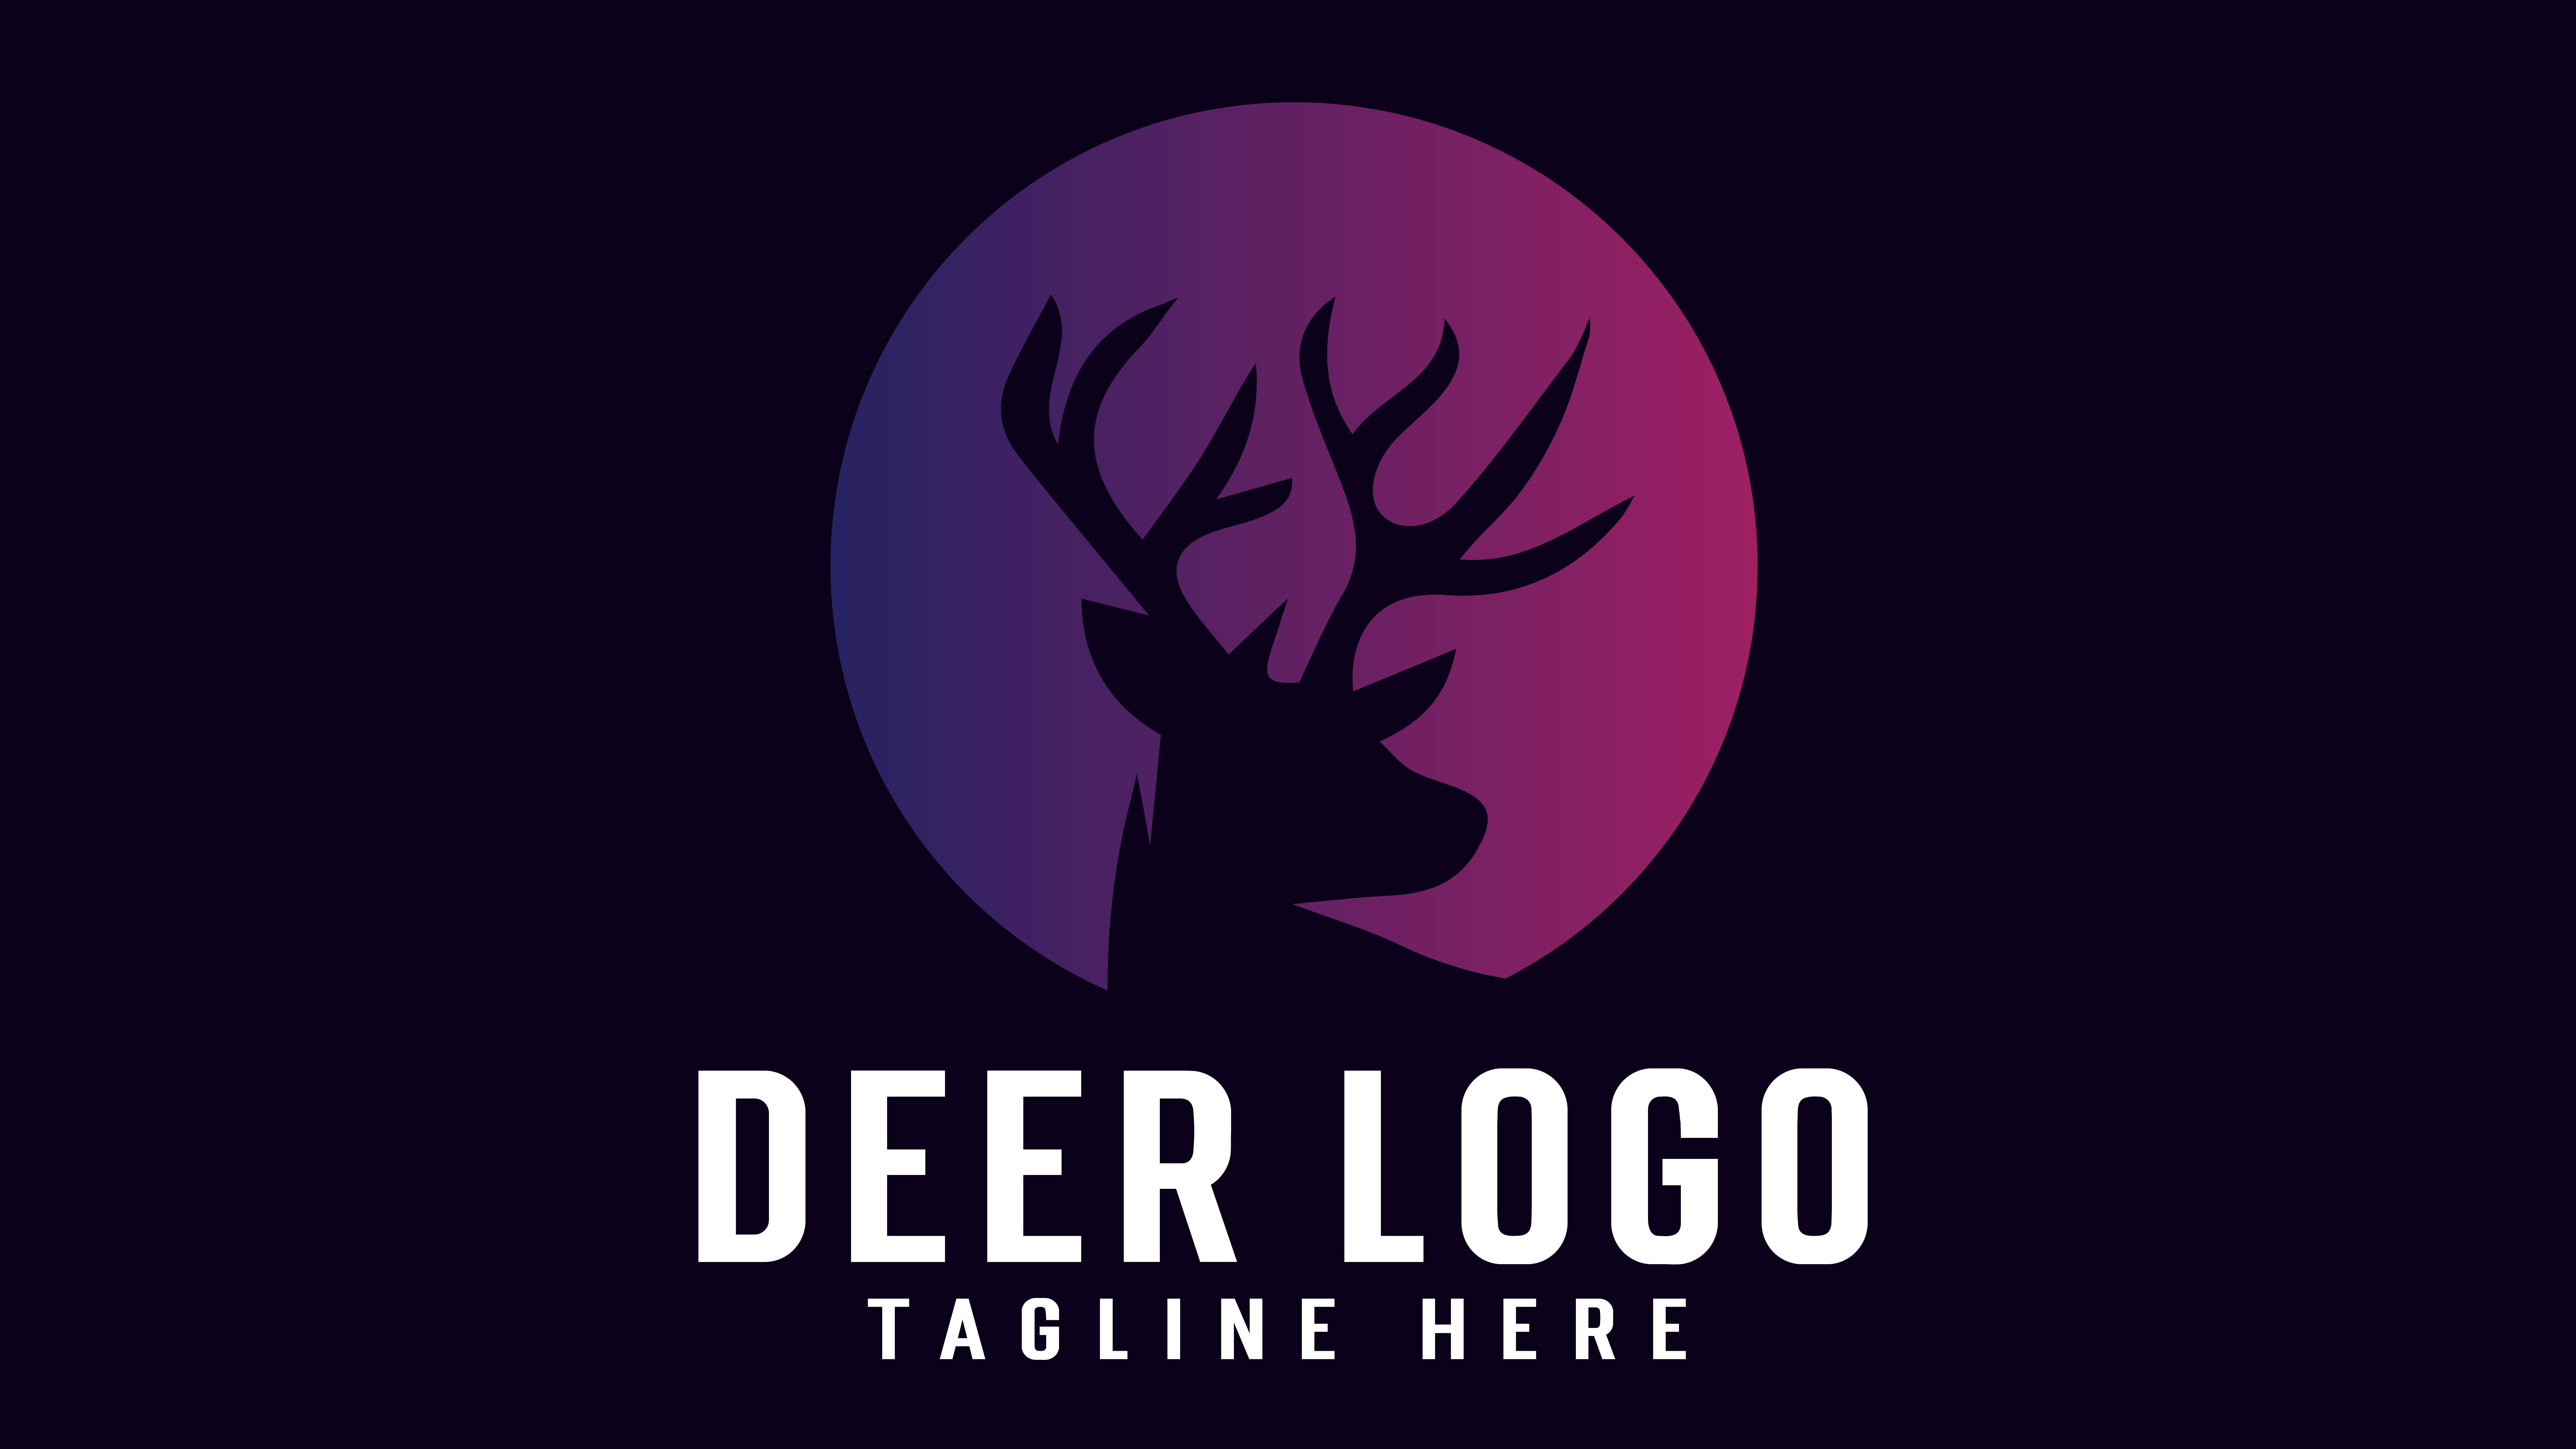 Deer Logo Design cover image.